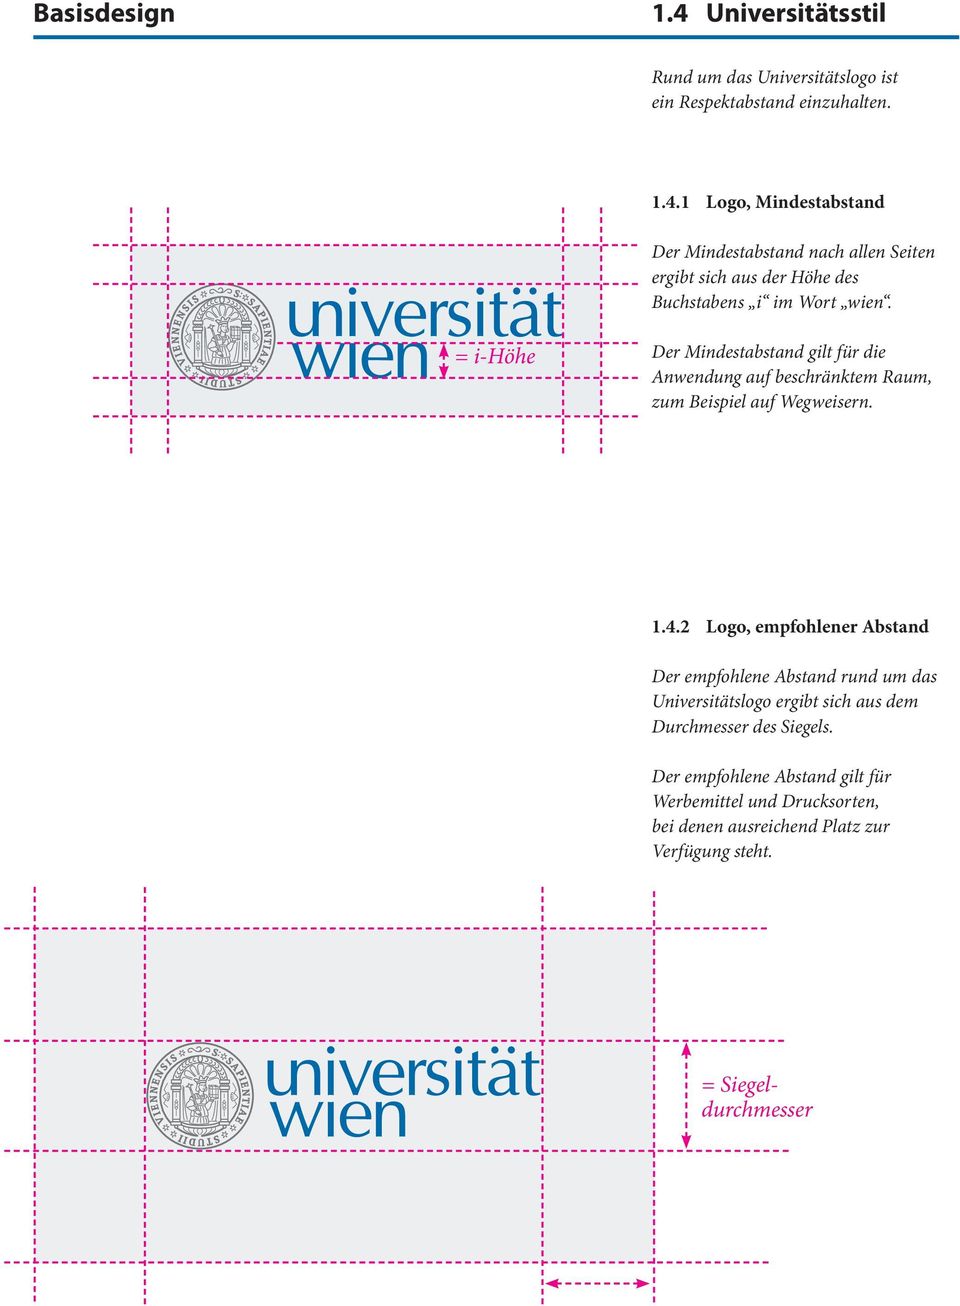 2 Logo, empfohlener Abstand Der empfohlene Abstand rund um das Universitätslogo ergibt sich aus dem Durchmesser des Siegels.